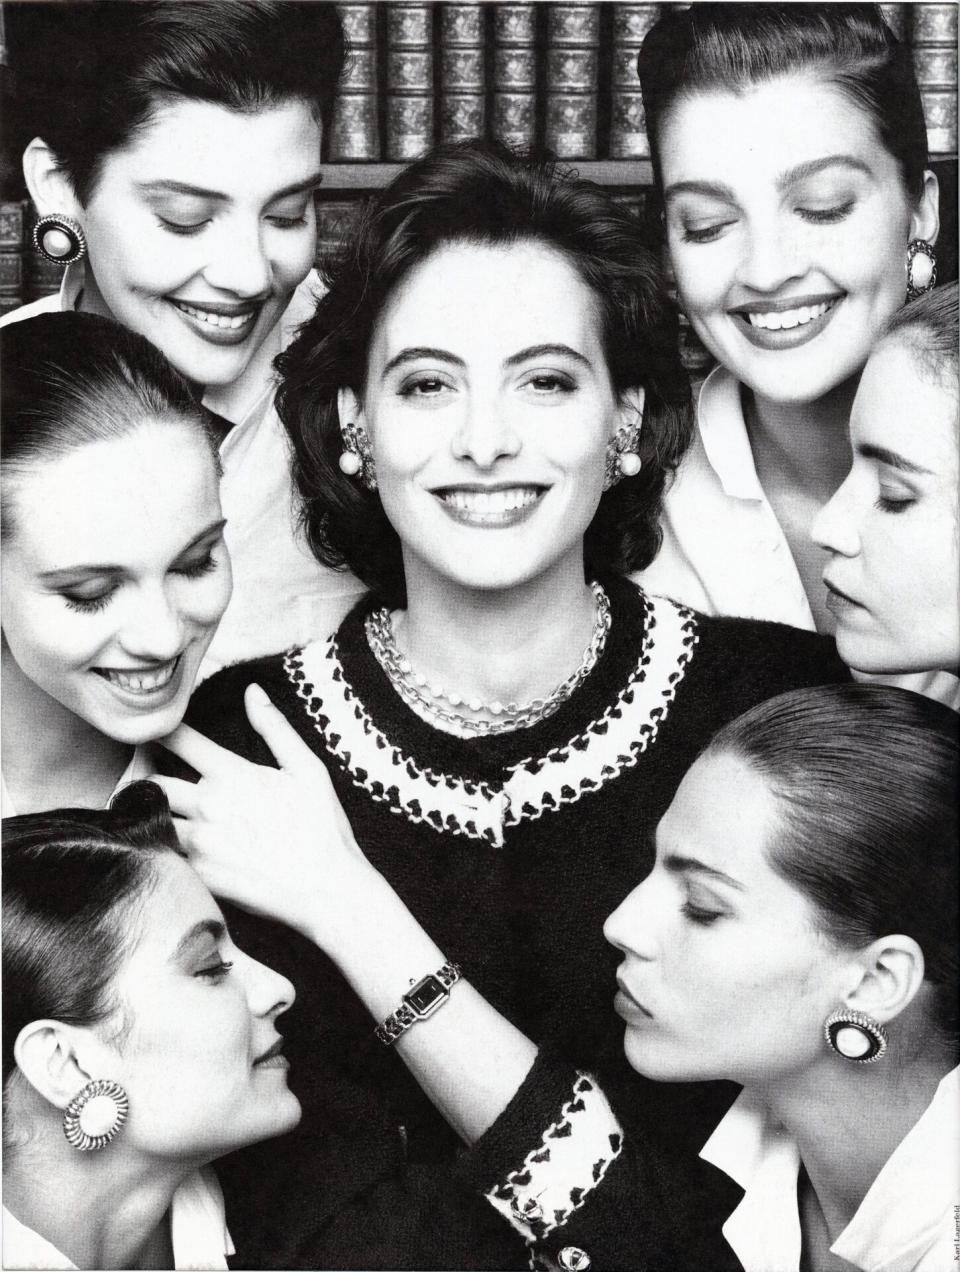 Inès de la Fressange photographed wearing the original Chanel Première watch in 1987